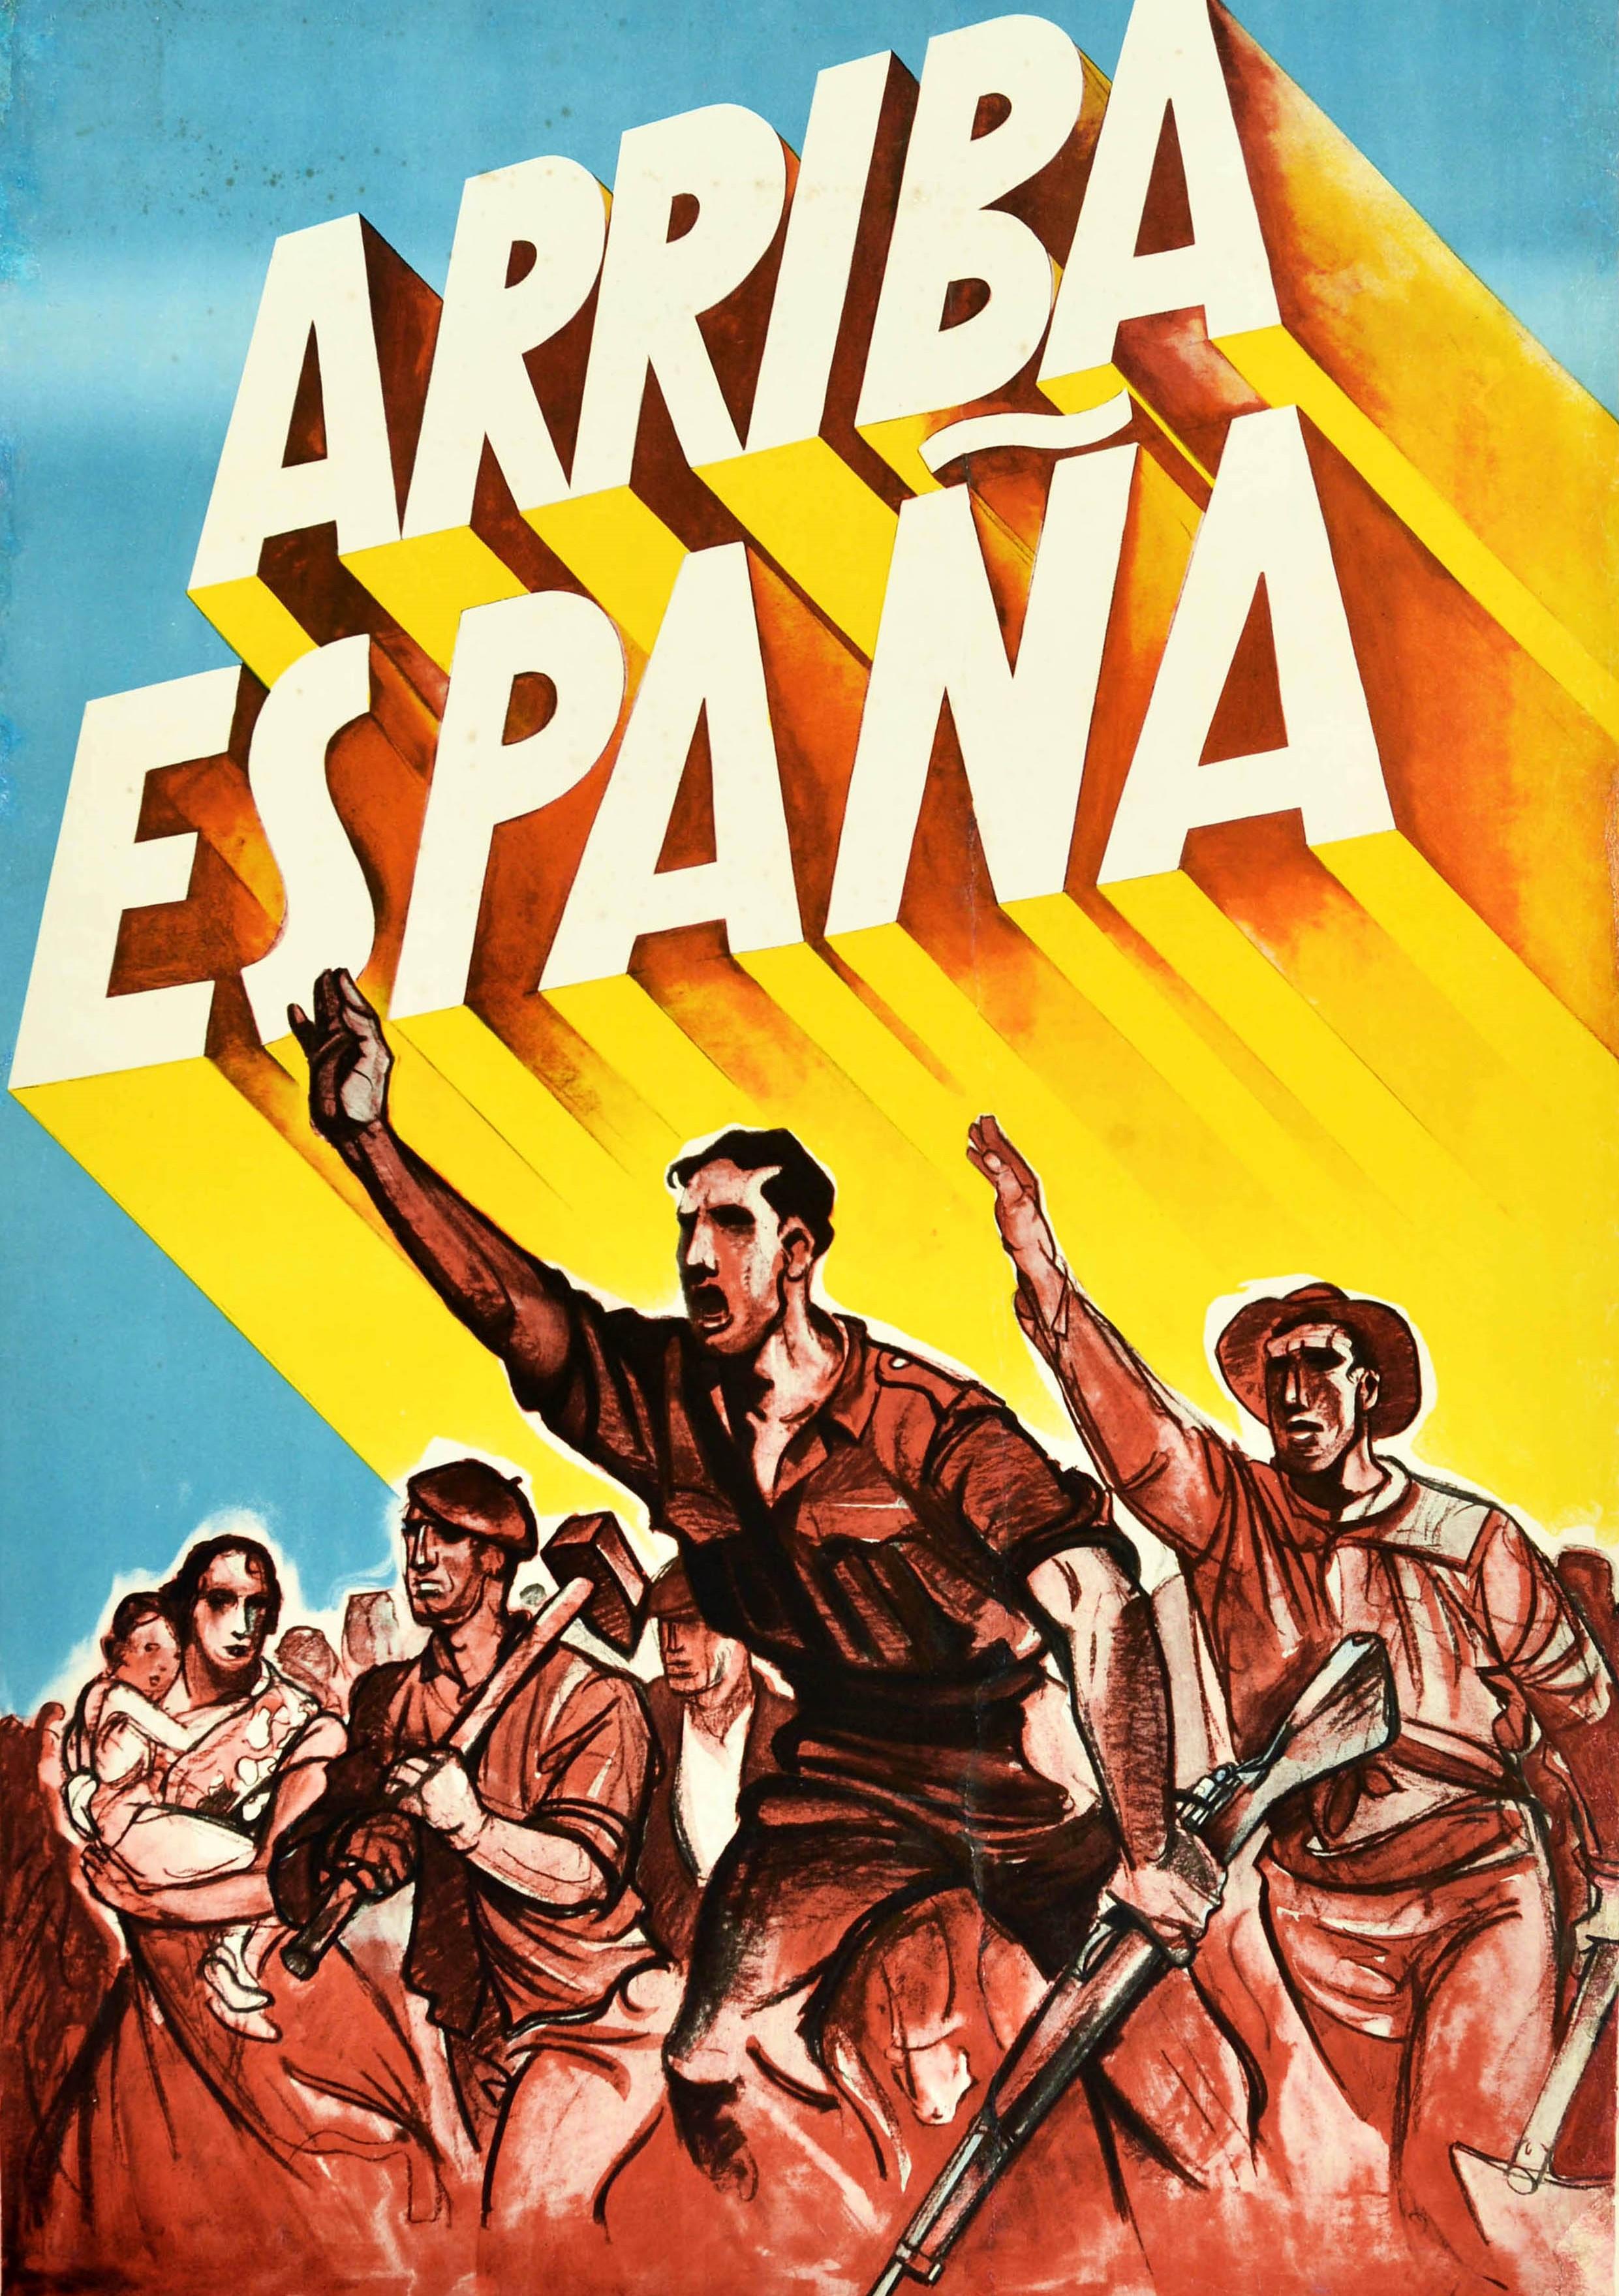 Originales altes Propagandaplakat zum Spanischen Bürgerkrieg (1936-1939) - Arriba Espana / Go Spain - mit Soldaten, Arbeitern, Bauern, Frauen und Kindern, die sich erheben und unter dem dramatischen Schriftzug vorwärts marschieren. Großes Format.